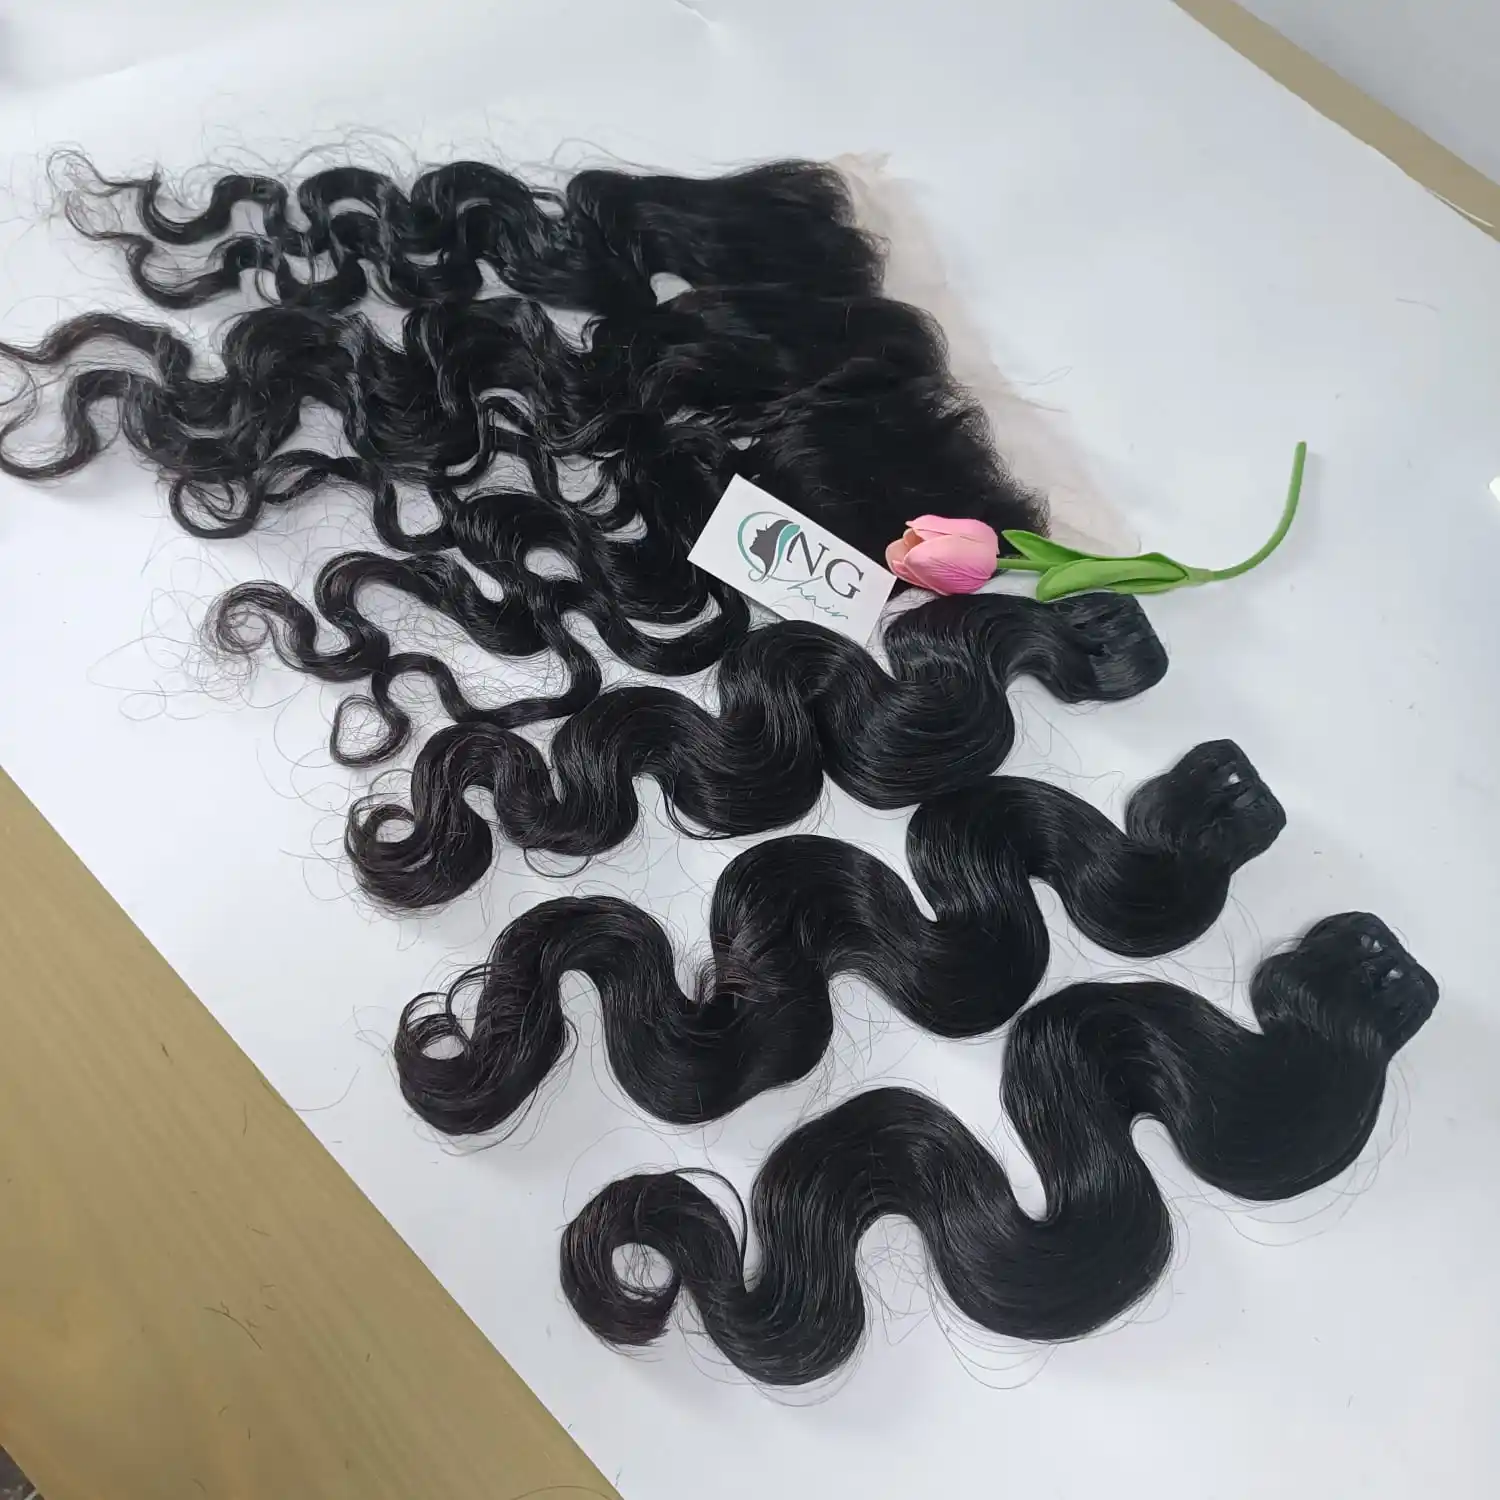 Das neueste meist verkaufte Produkt 13*4 Lace Frontal Body Wave 100% vietnam esisches menschliches Haar in Voll farben